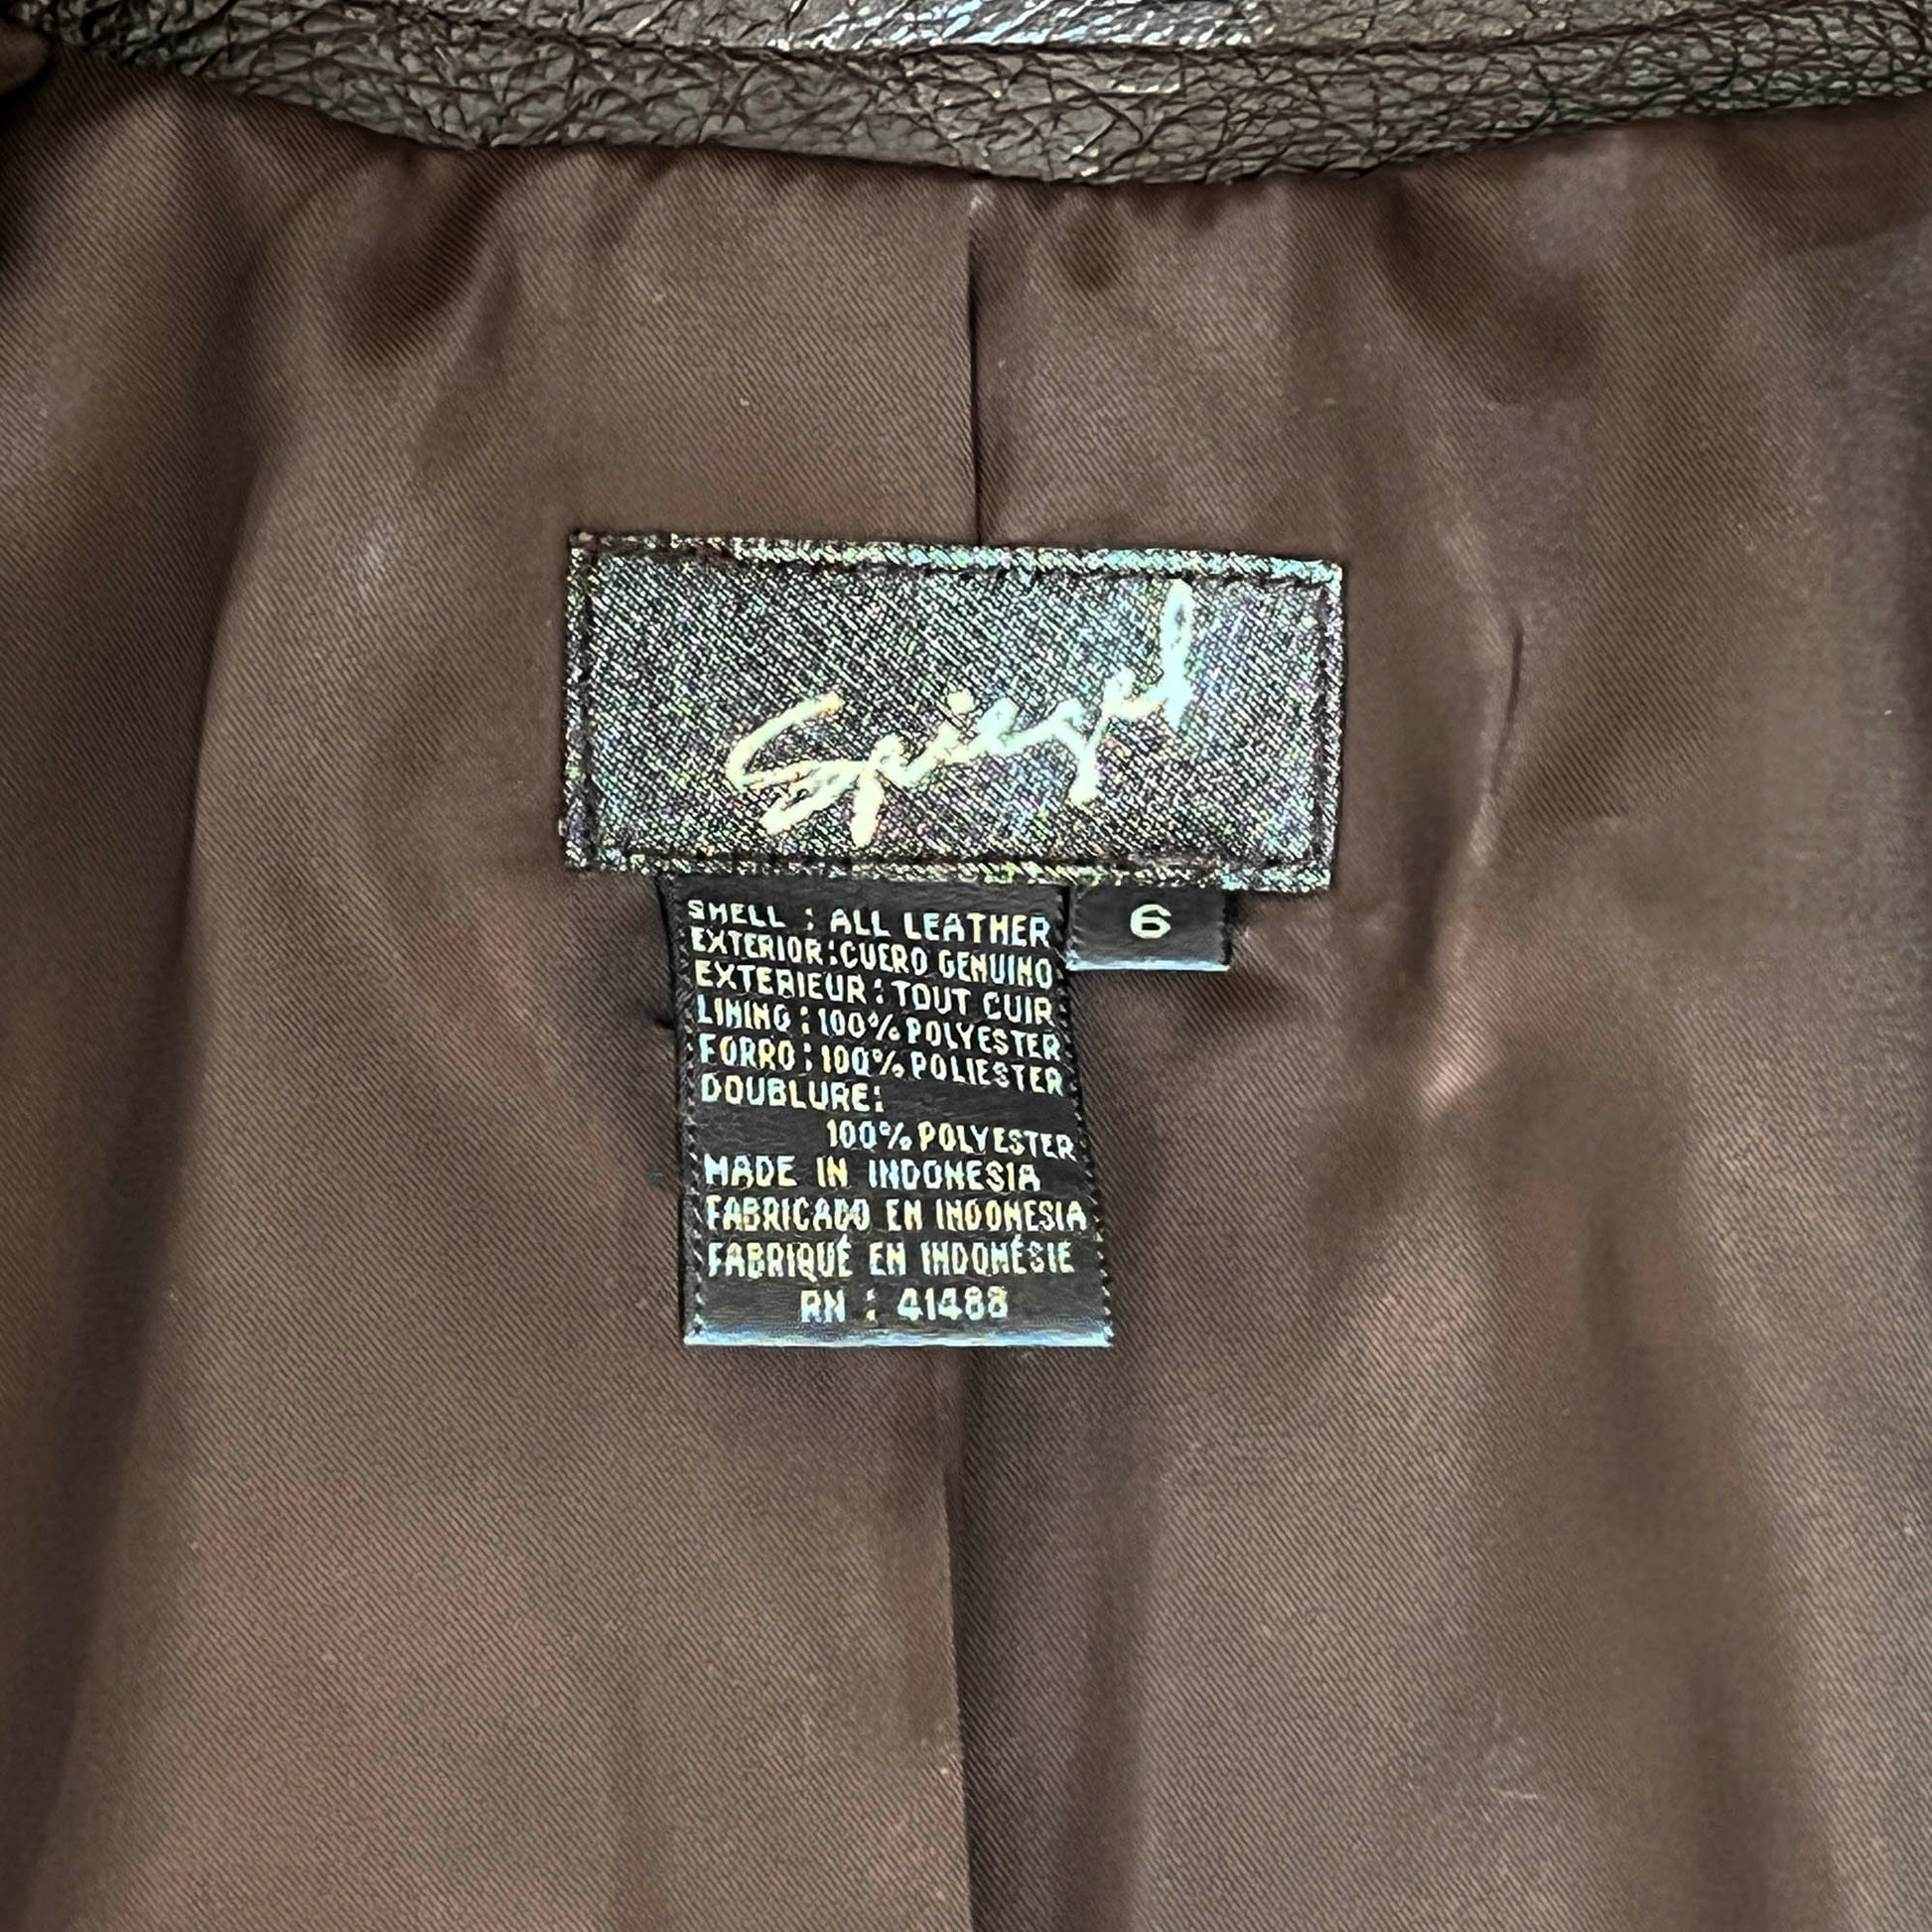 Spiegel-Brown-Leather-Jacket.-Shop-eBargainsAndDeals..com